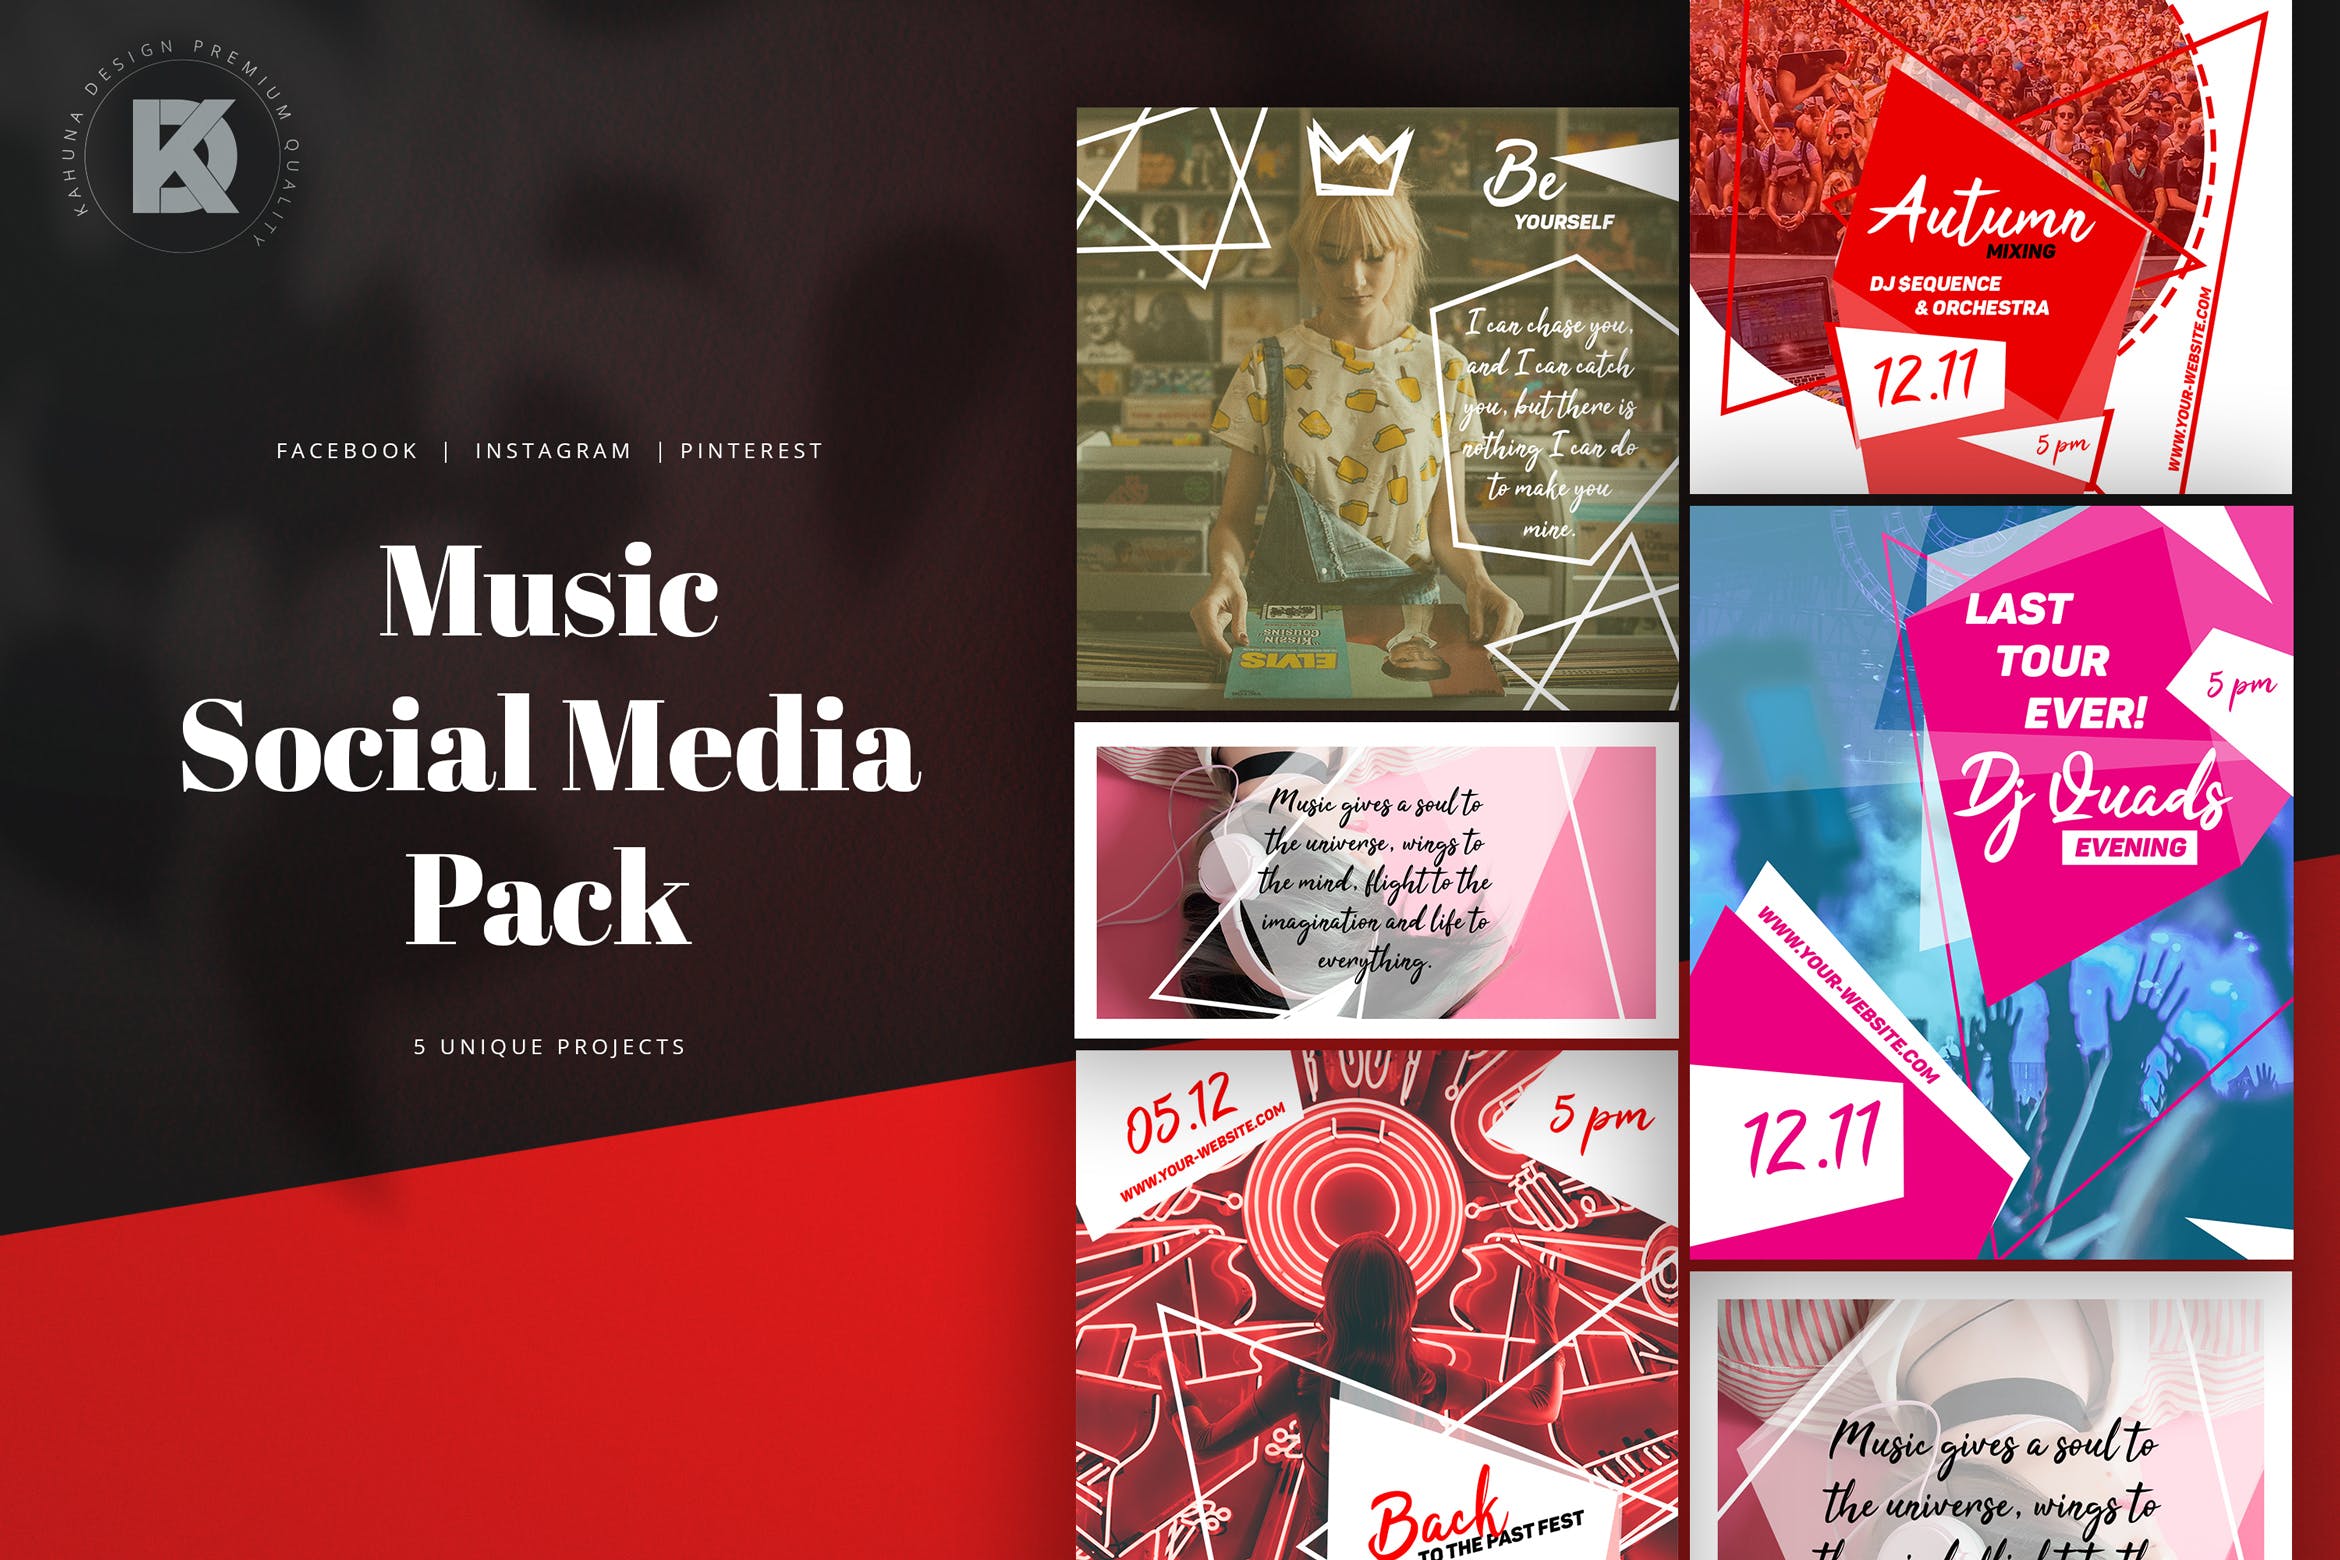 音乐活动/音乐节主题社交媒体新媒体设计素材 Music Social Media Pack插图